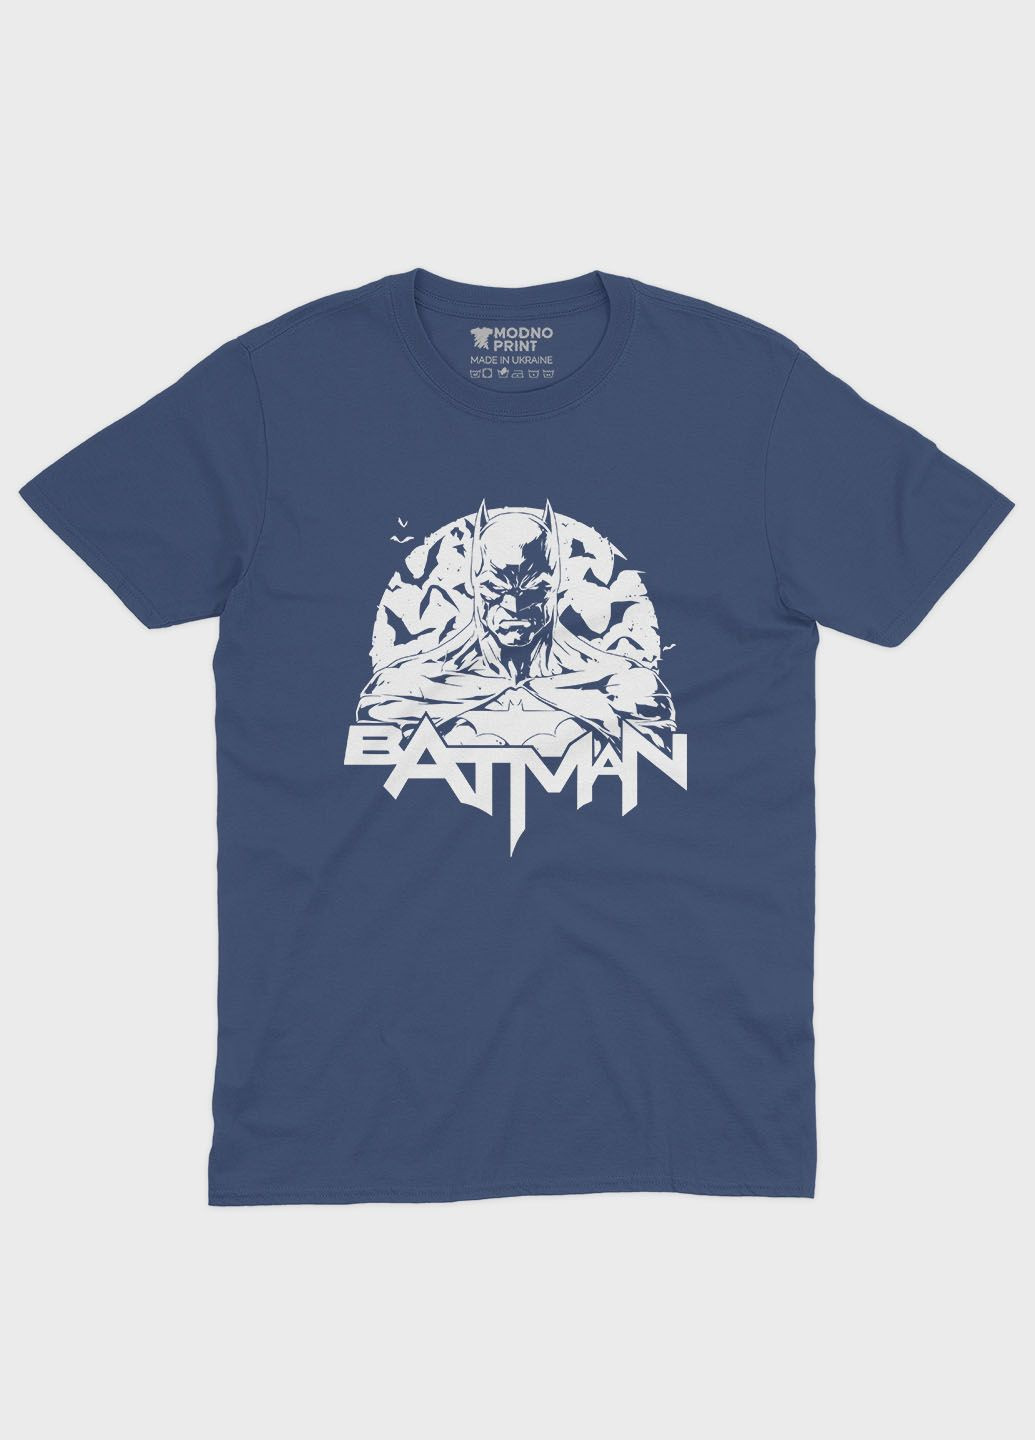 Темно-синя демісезонна футболка для хлопчика з принтом супергероя - бетмен (ts001-1-nav-006-003-012-b) Modno